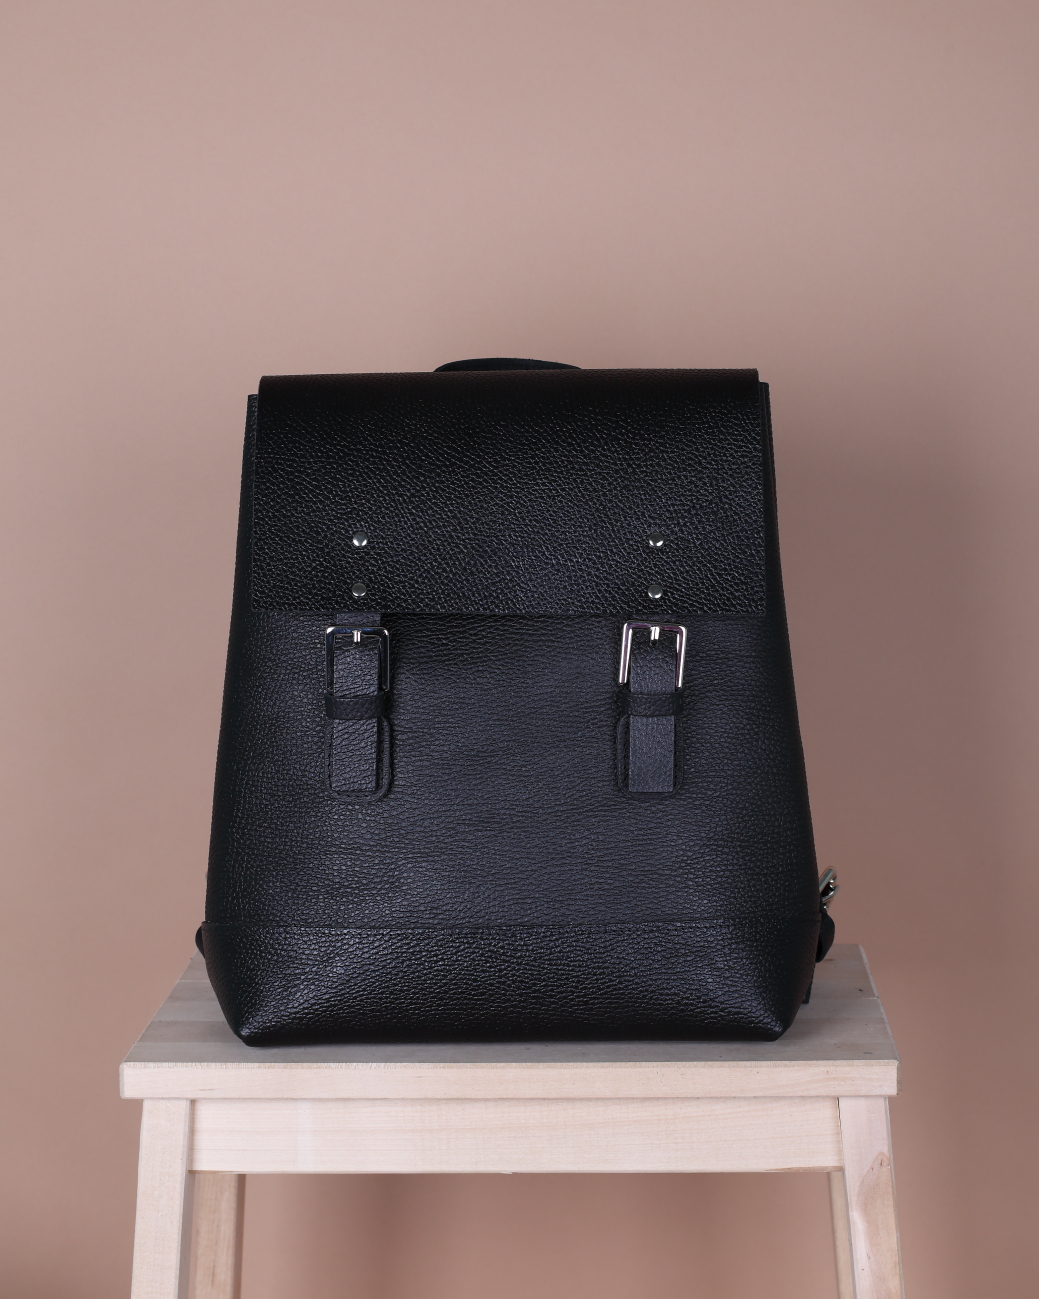 Женский рюкзак из натуральной кожи черный B007 black grain